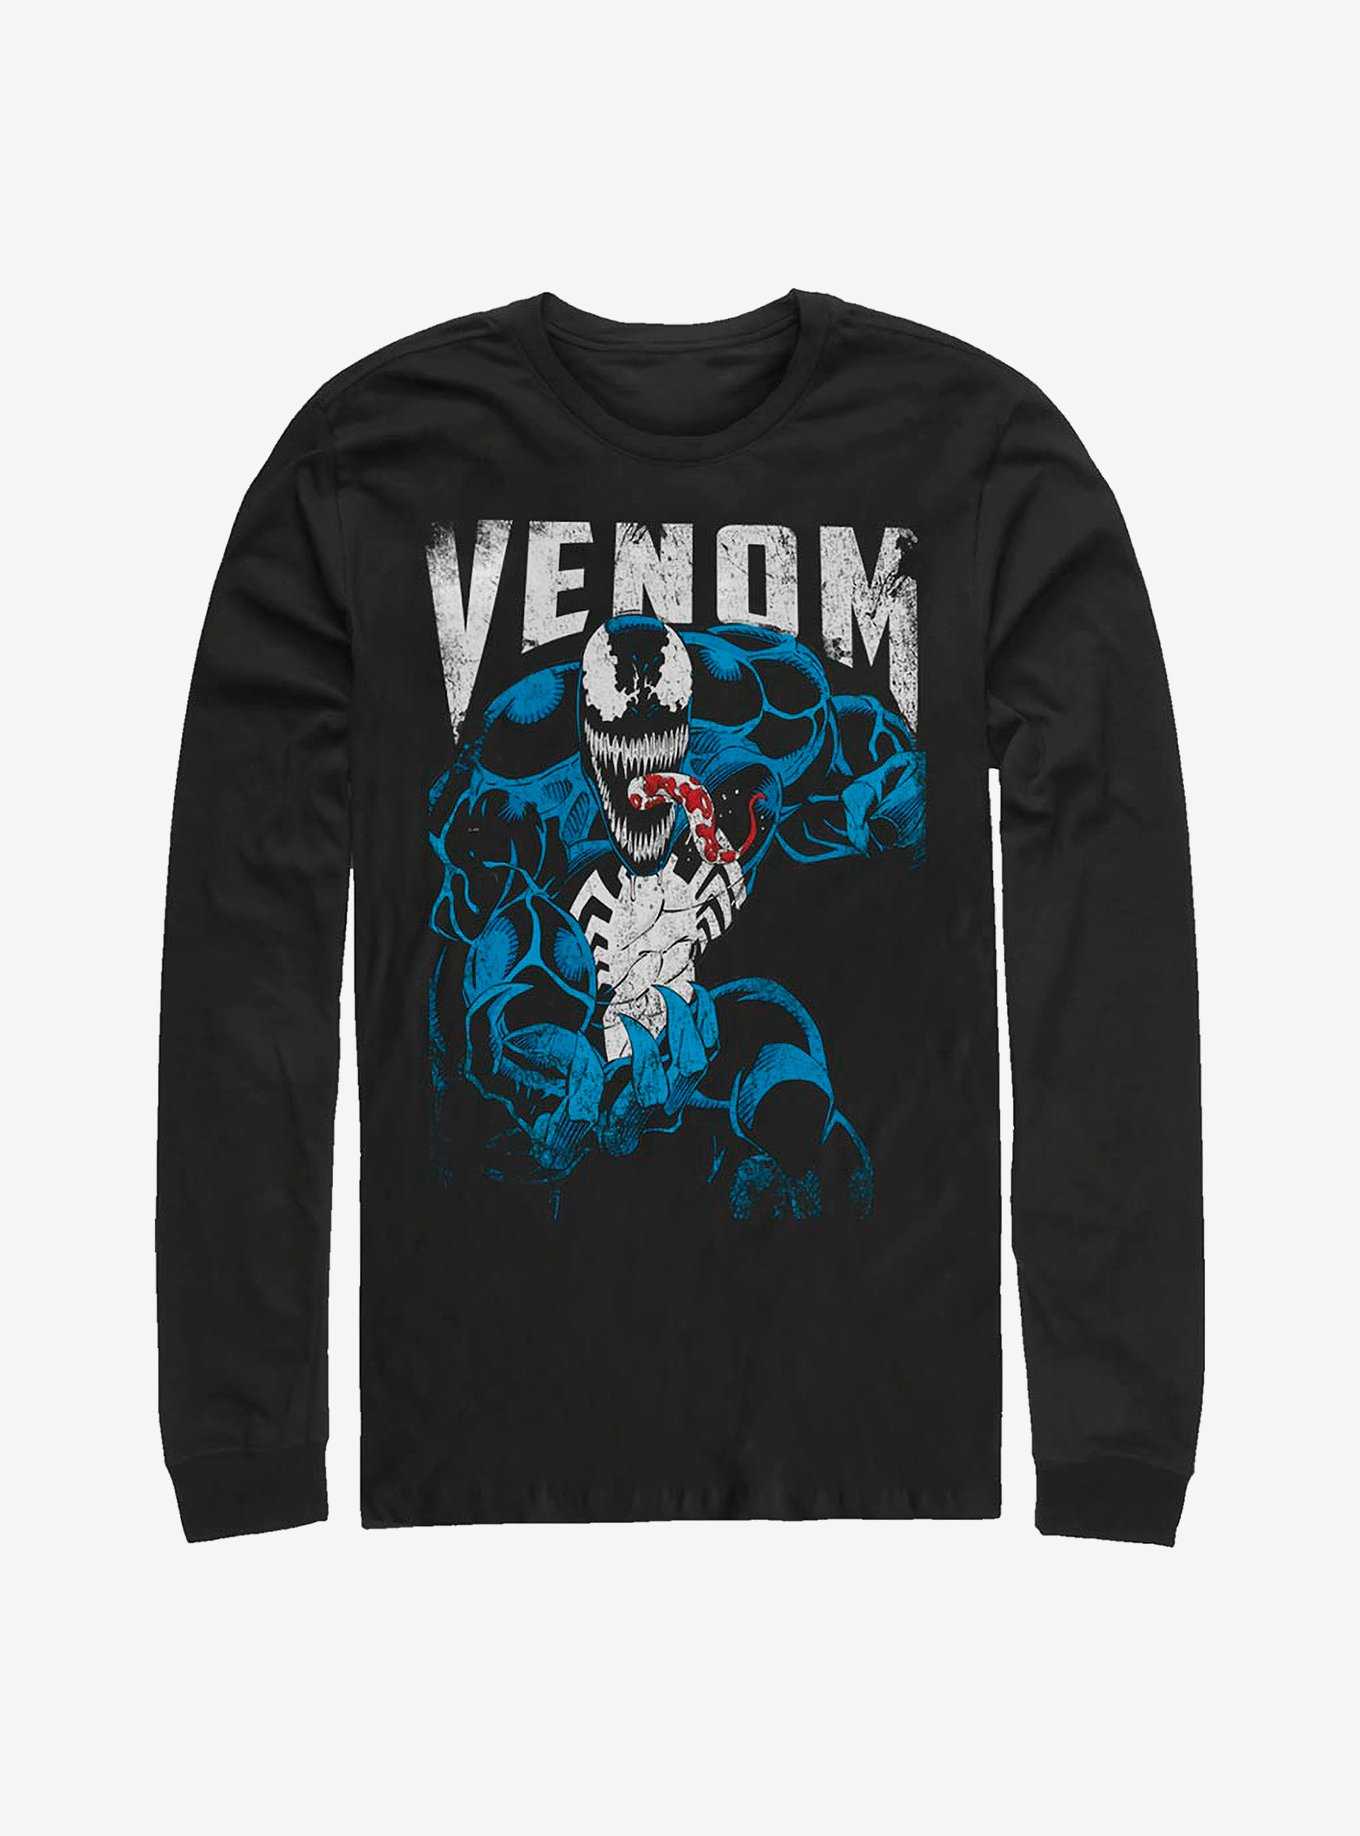 Marvel Venom: Let There Be Carnage Venom Grunge Long-Sleeve T-Shirt, , hi-res